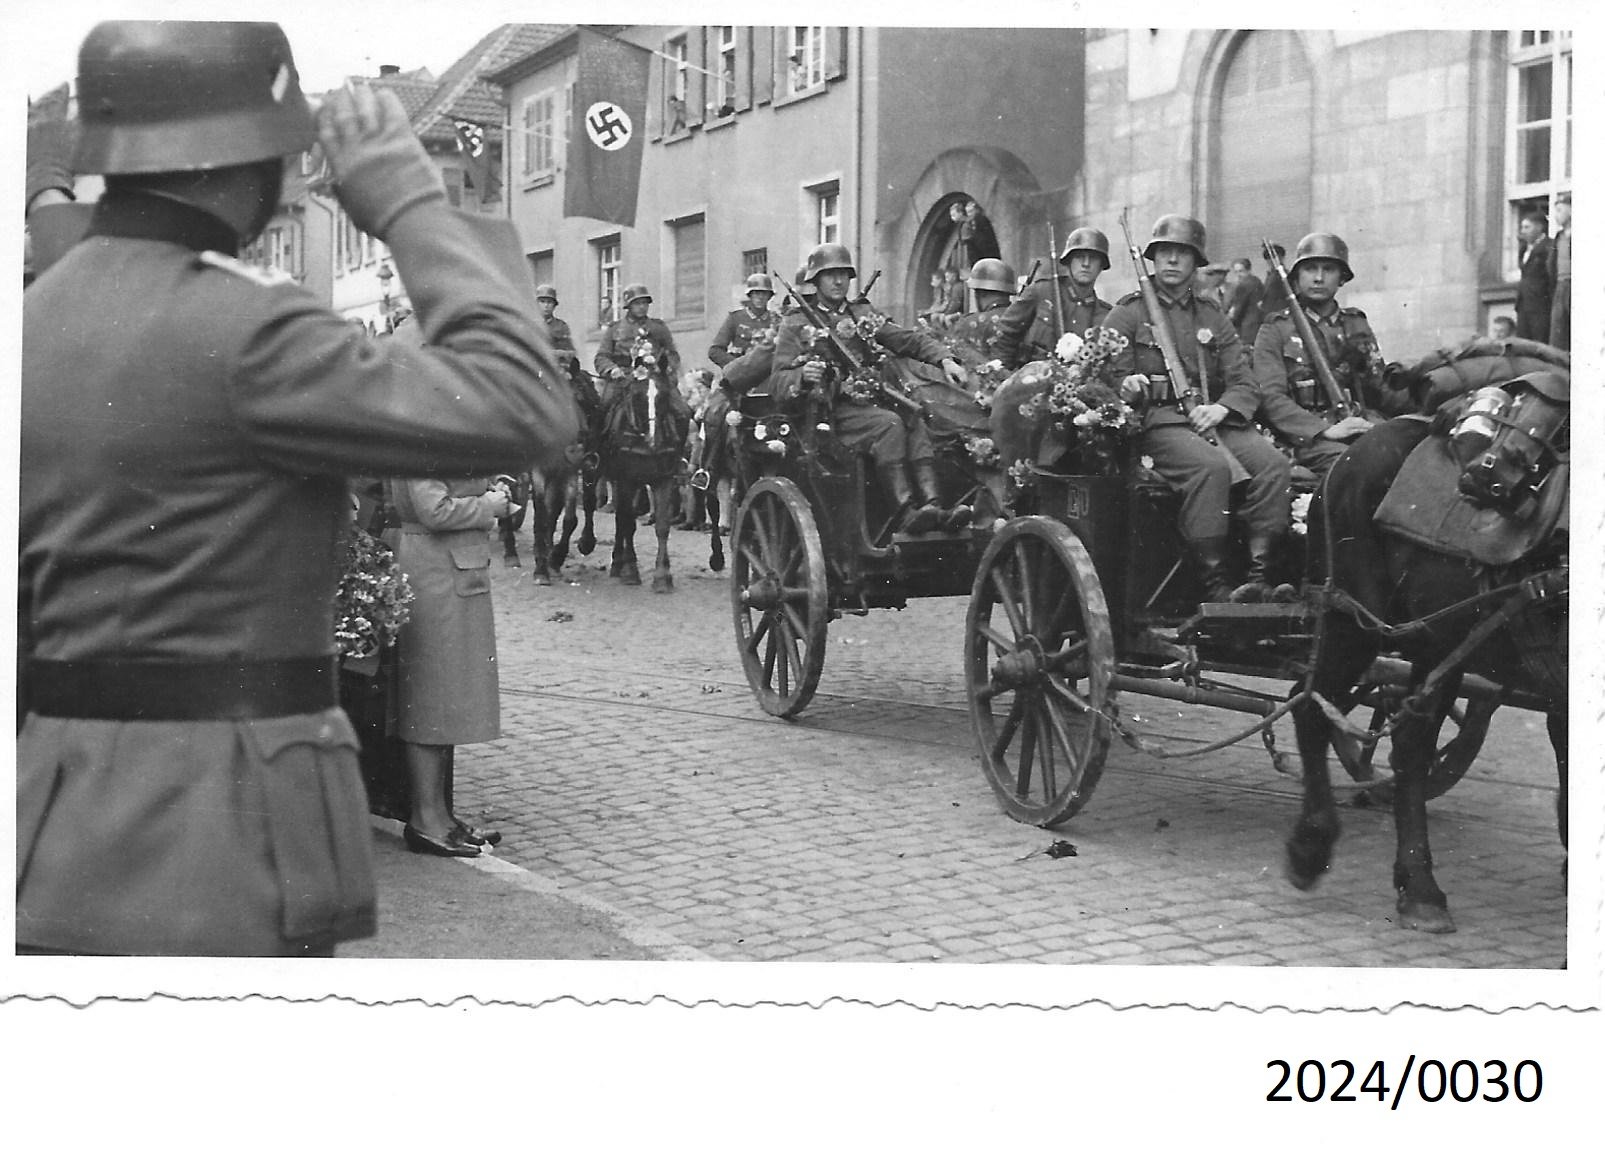 Bad Dürkheim, Zurückkehrende deutsche Truppen nach dem Frankreichfeldzug, 1940 (Stadtmuseum Bad Dürkheim im Kulturzentrum Haus Catoir CC BY-NC-SA)